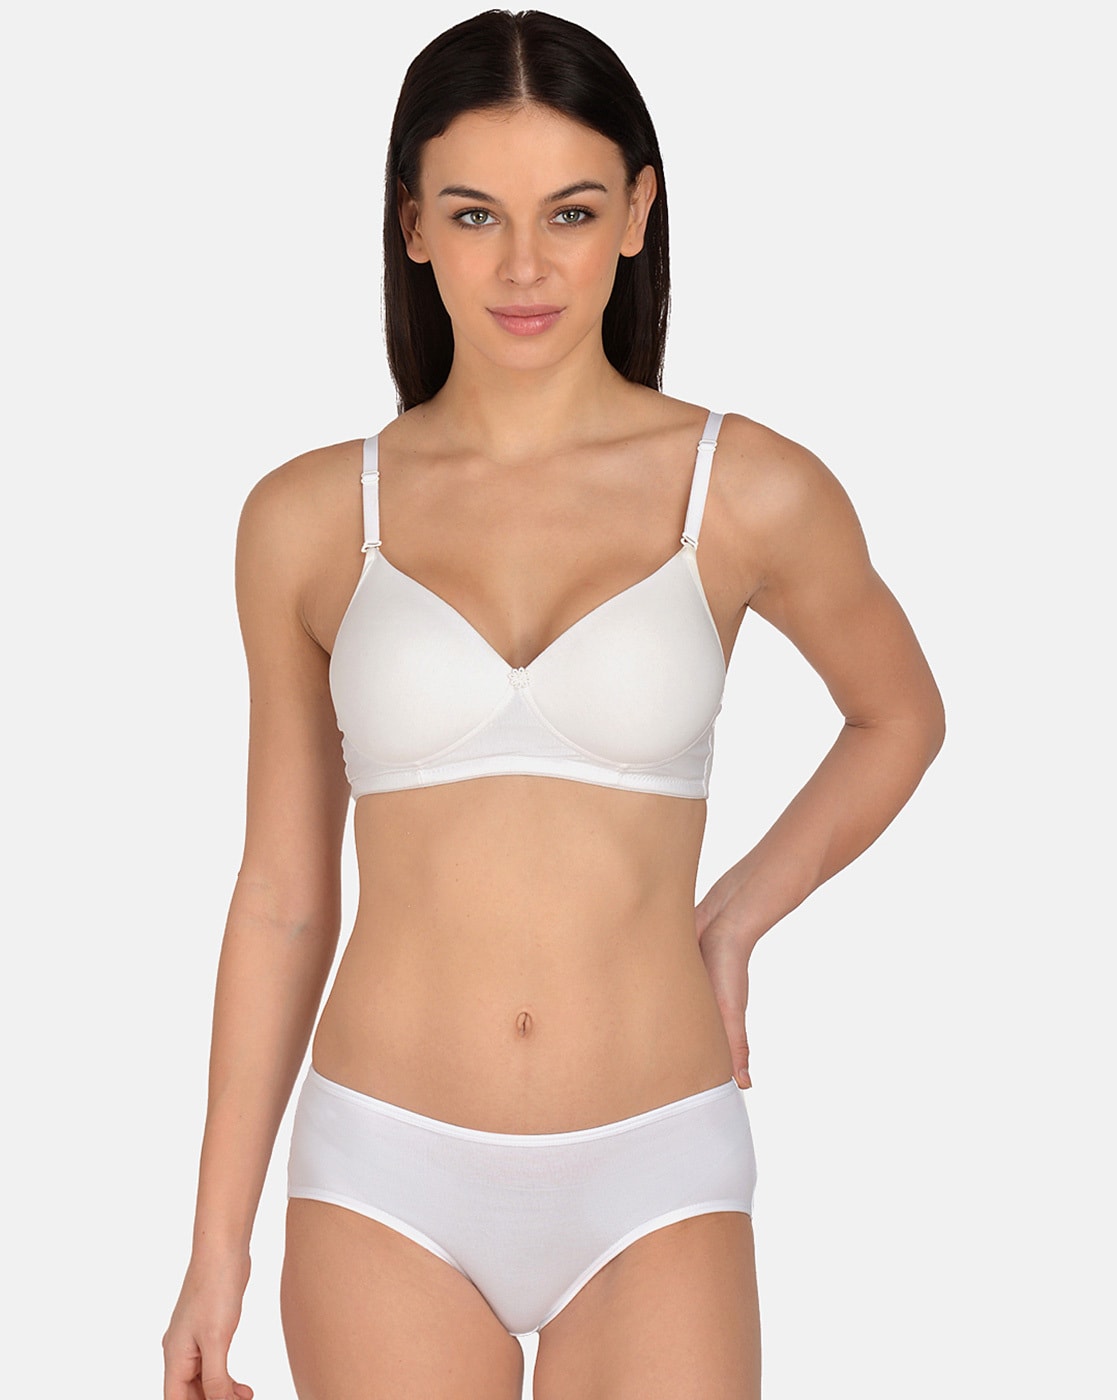 Lycra Cotton Lace Ladies Designer Bra Panty Set at Rs 155/set in